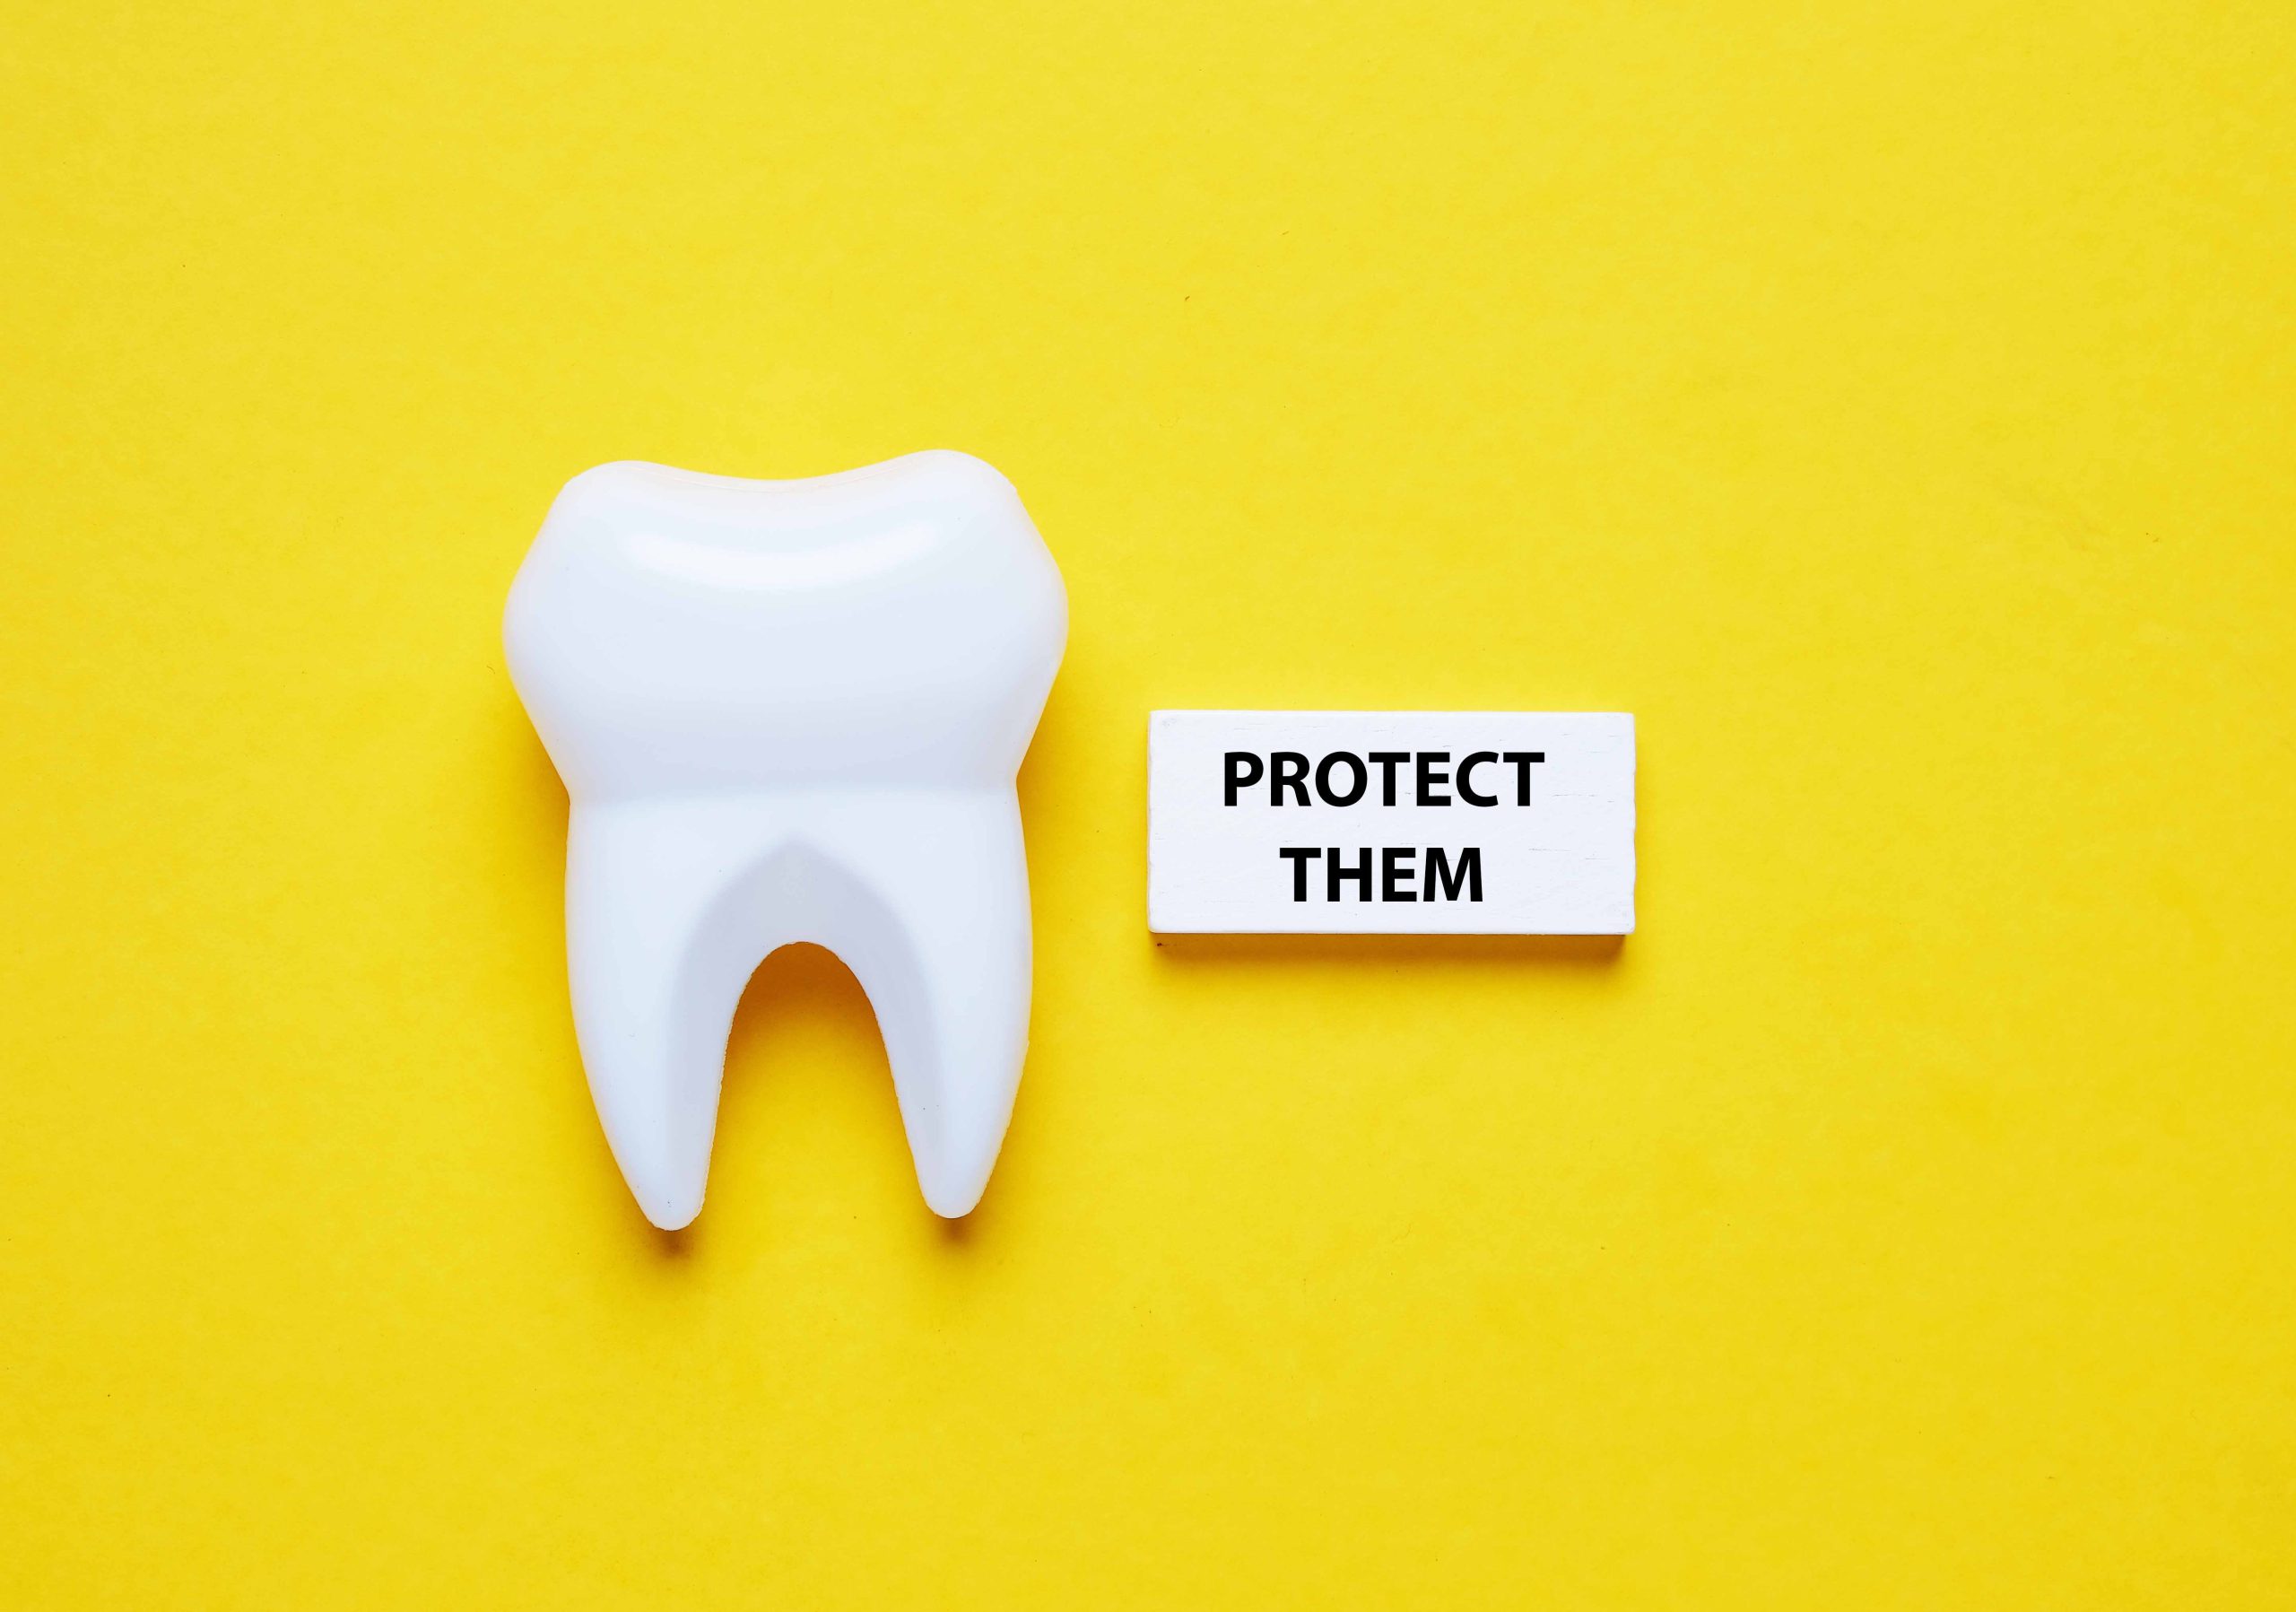 黄色い背景の前に1本の歯の模型と「PROTECT THEM」と書かれたプレートが置かれている